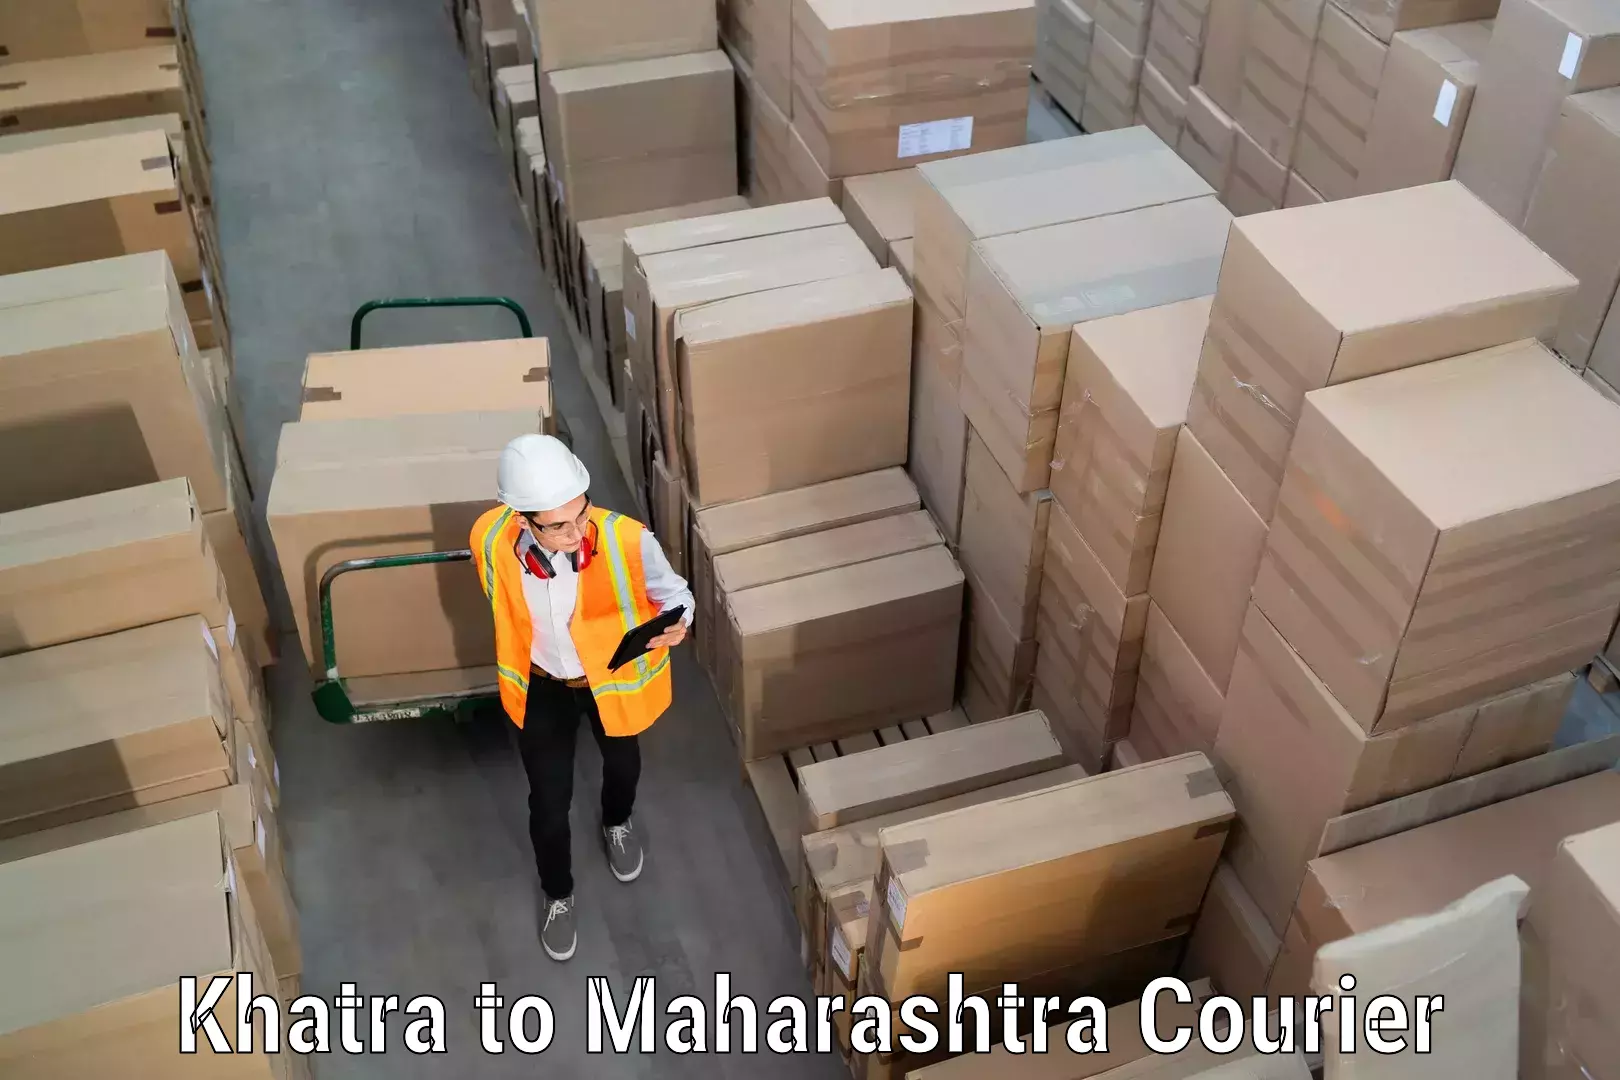 Household goods transport service Khatra to Maharashtra